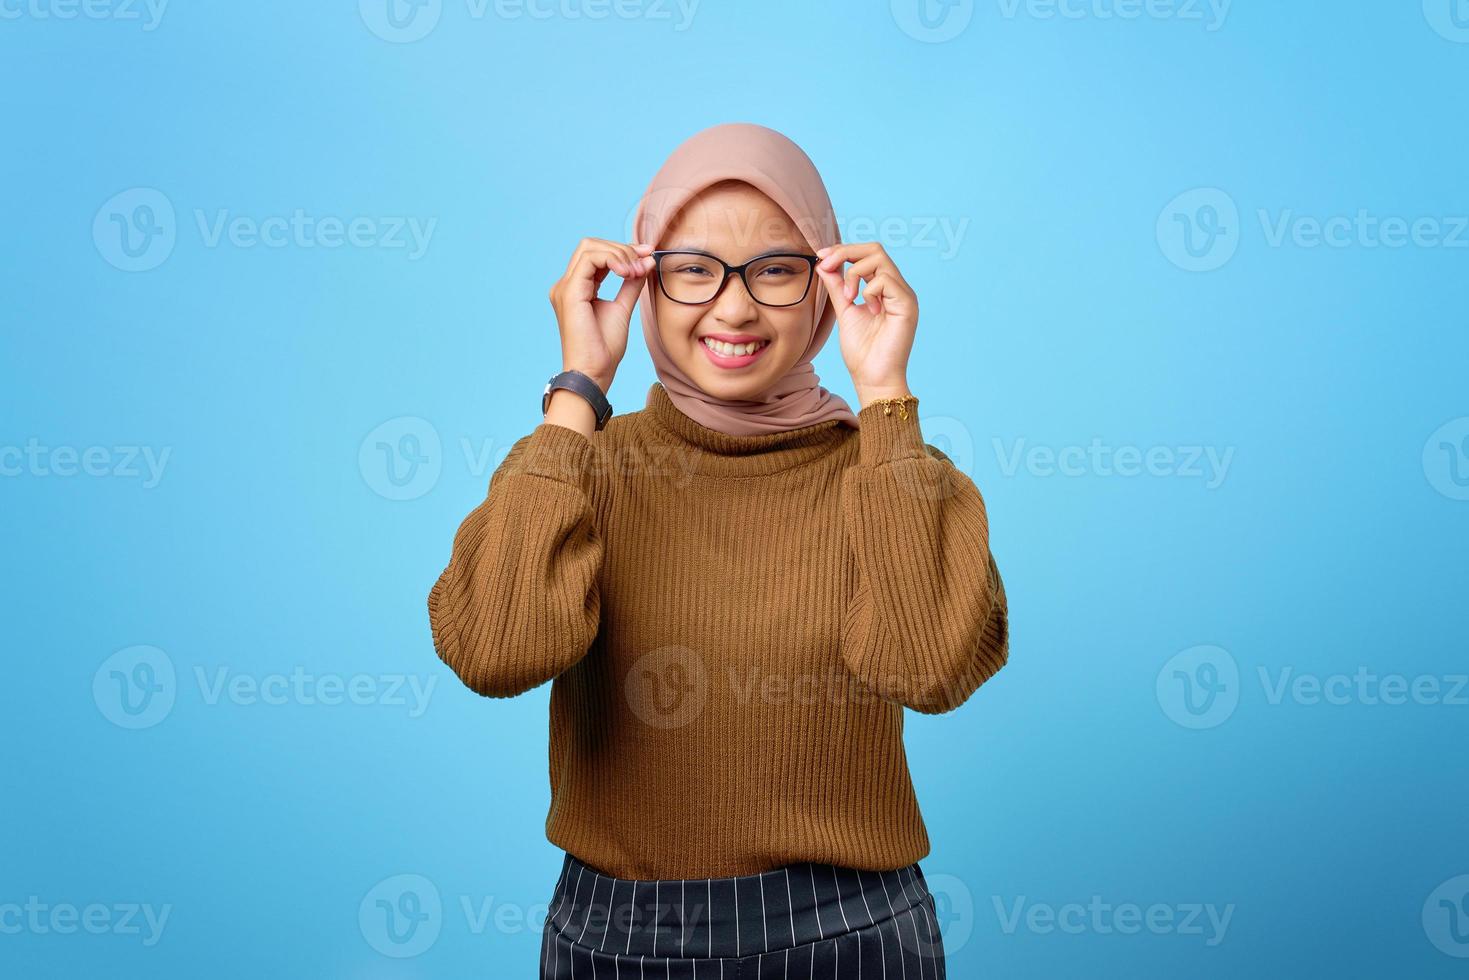 gelukkige jonge Aziatische vrouw hand op bril met lachende uitdrukking op blauwe achtergrond foto